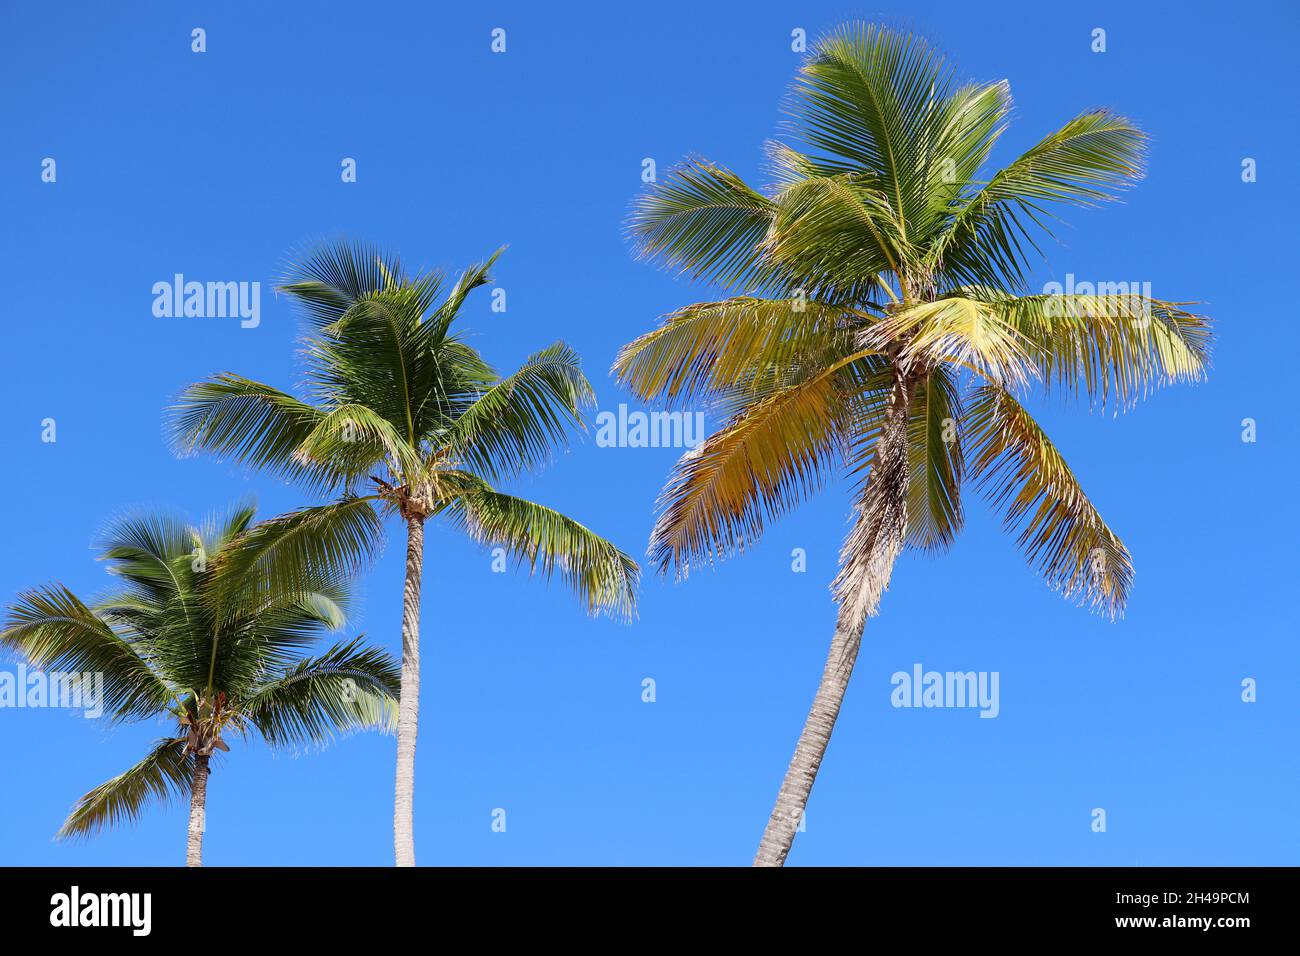 Trois palmiers à noix de coco sur fond ciel bleu clair.Plage tropicale, nature paradisiaque Banque D'Images